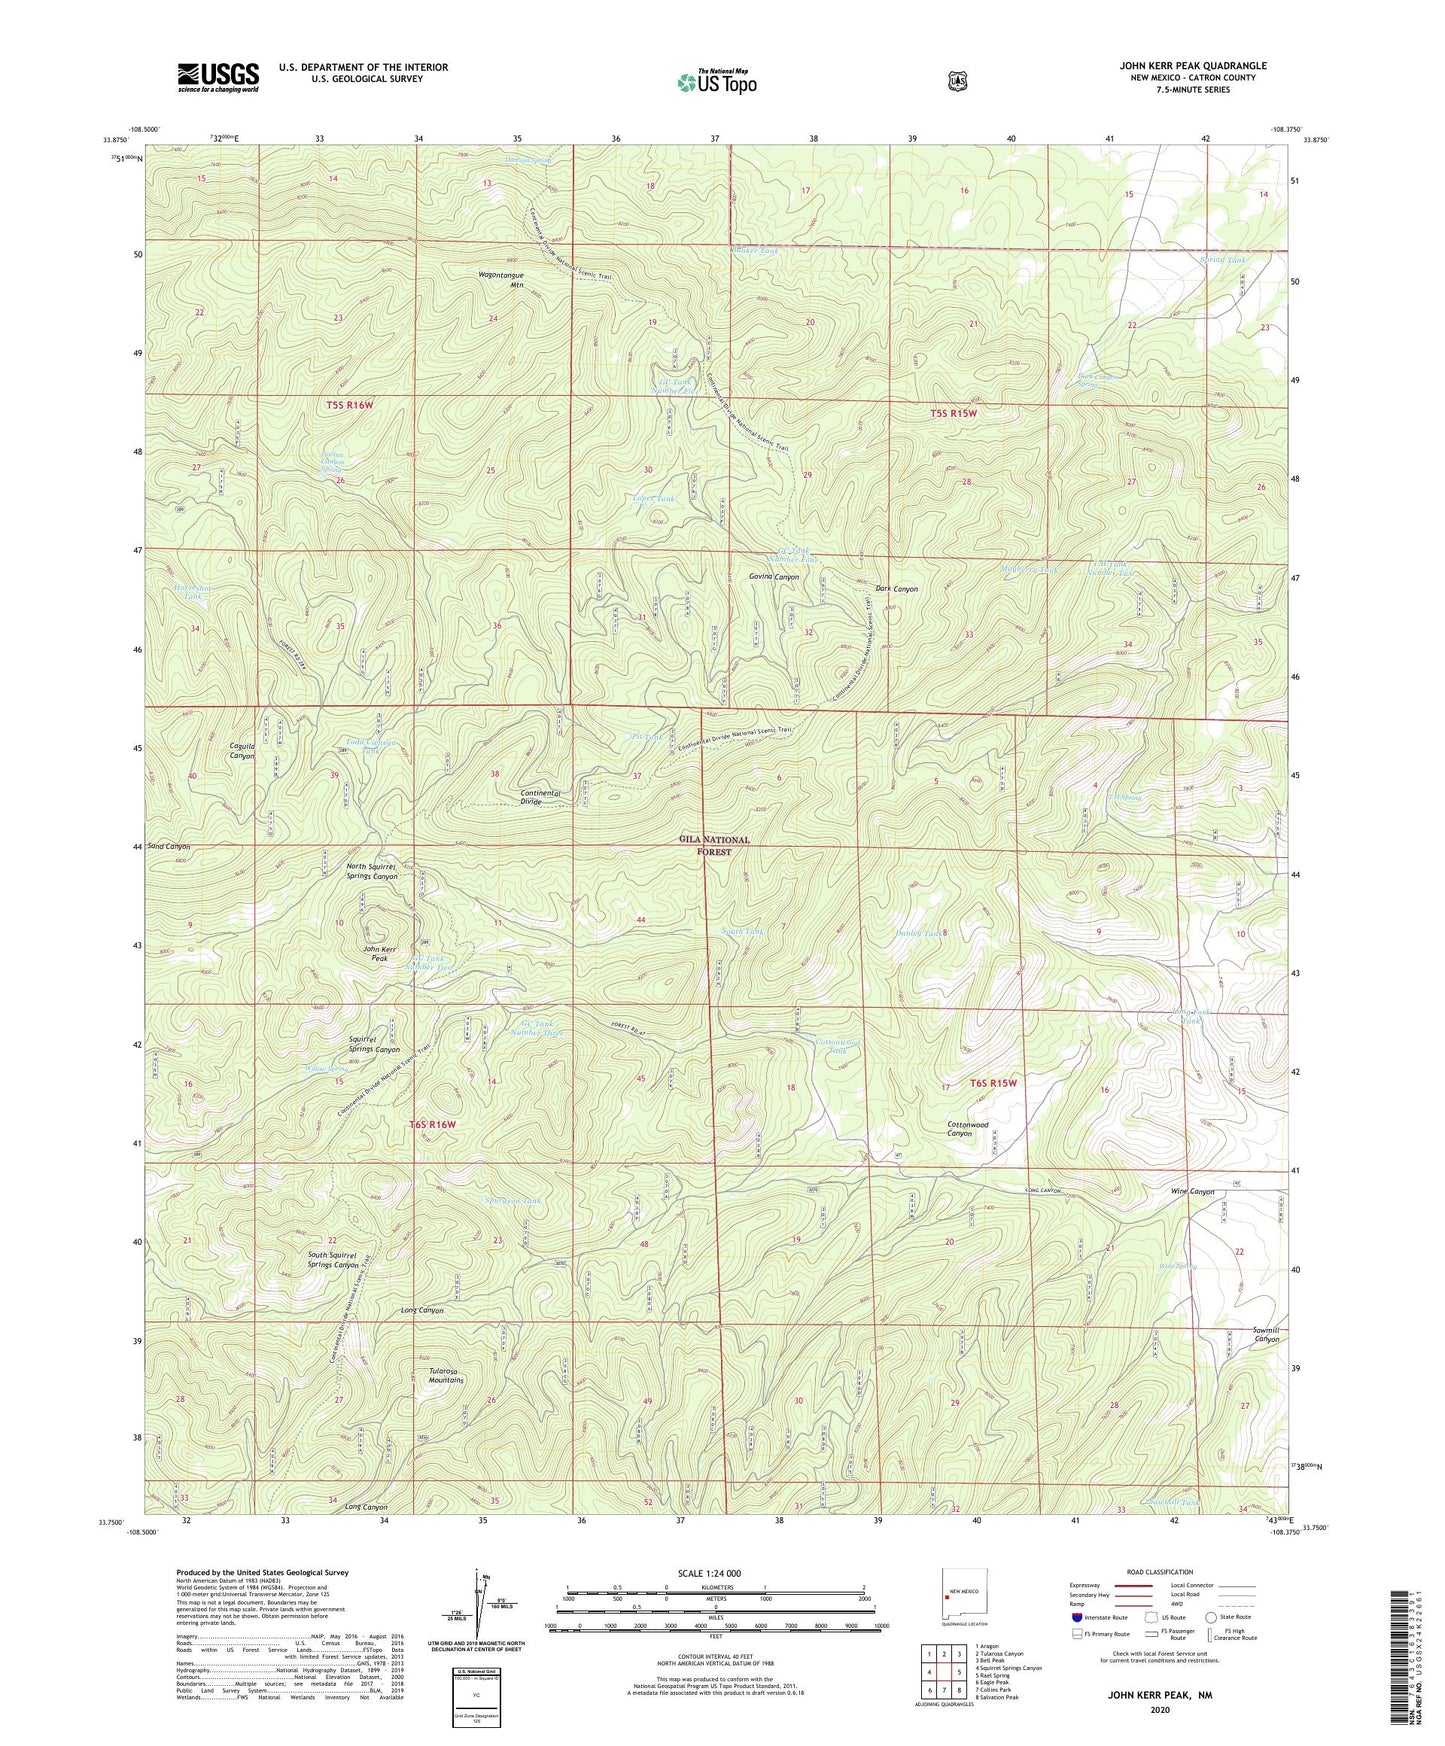 John Kerr Peak New Mexico US Topo Map Image